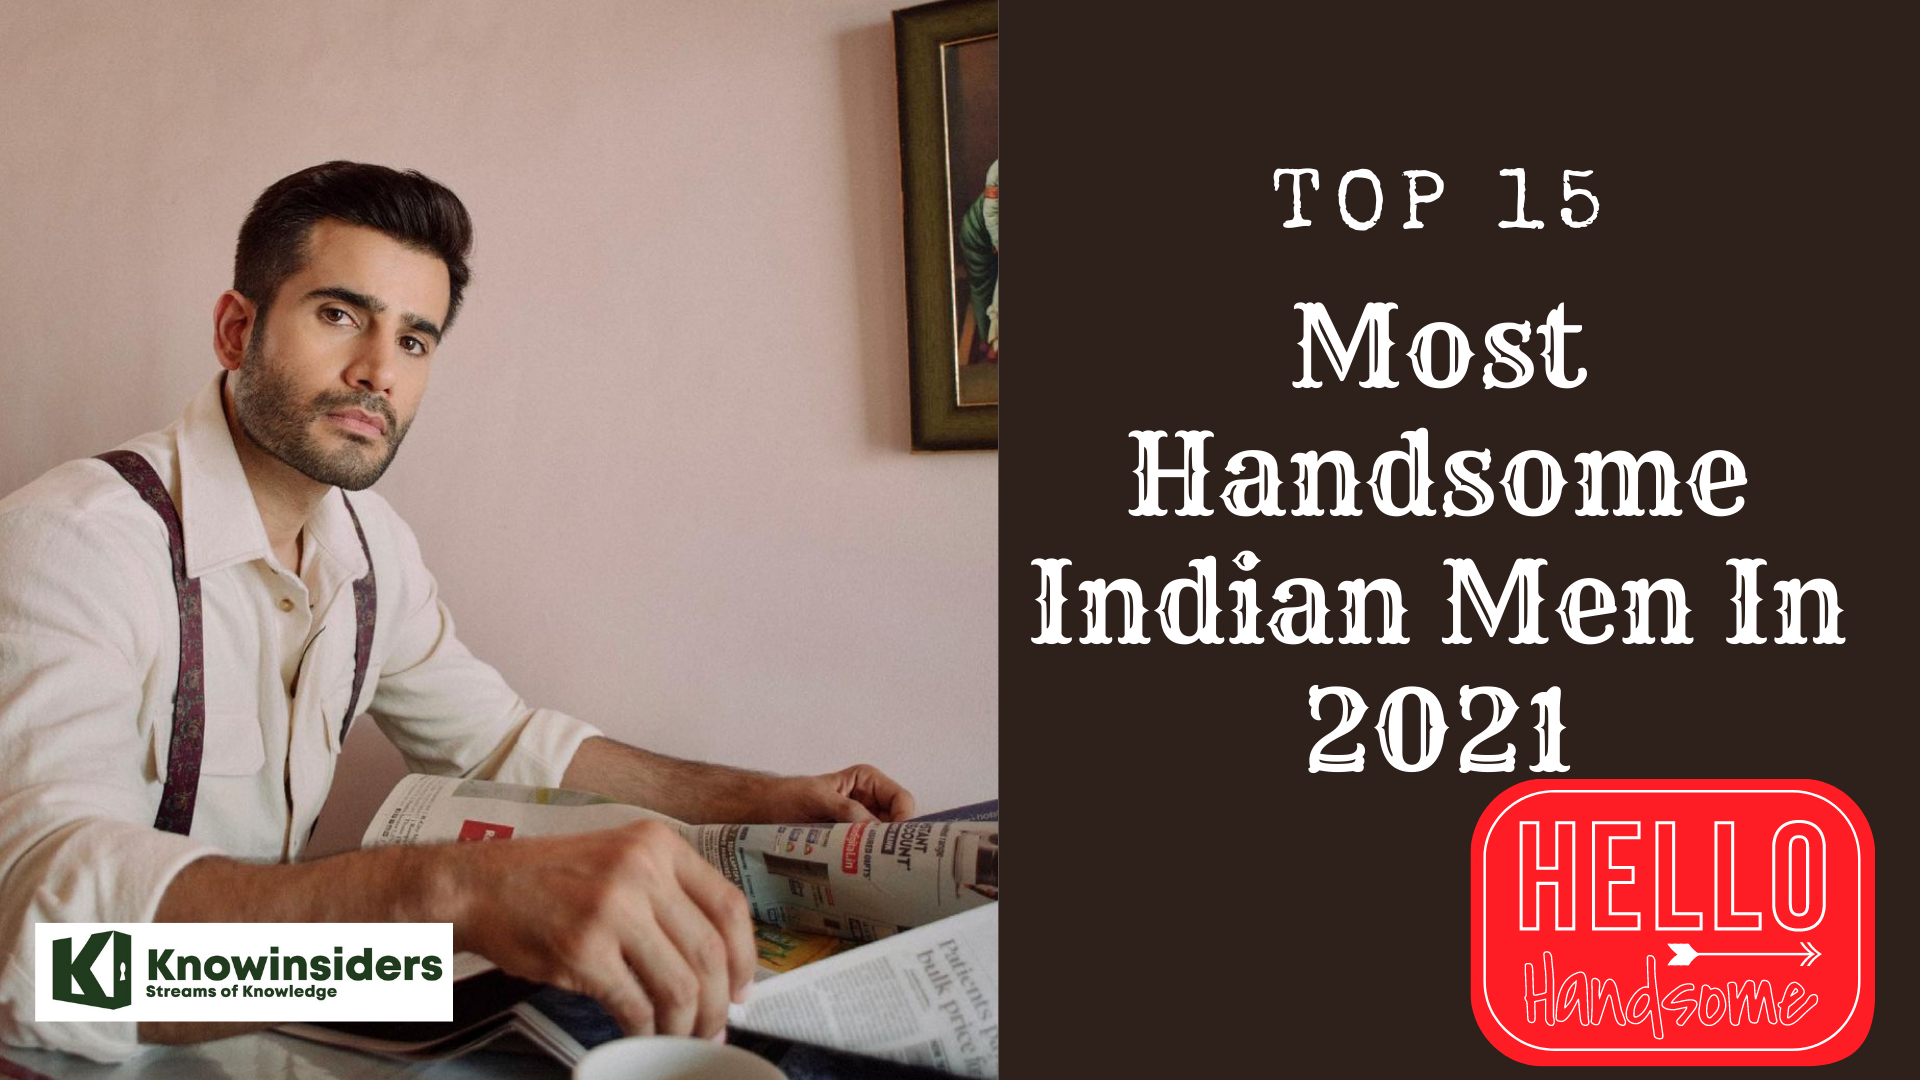 Top 15 Most Handsome Indian Men - Updated